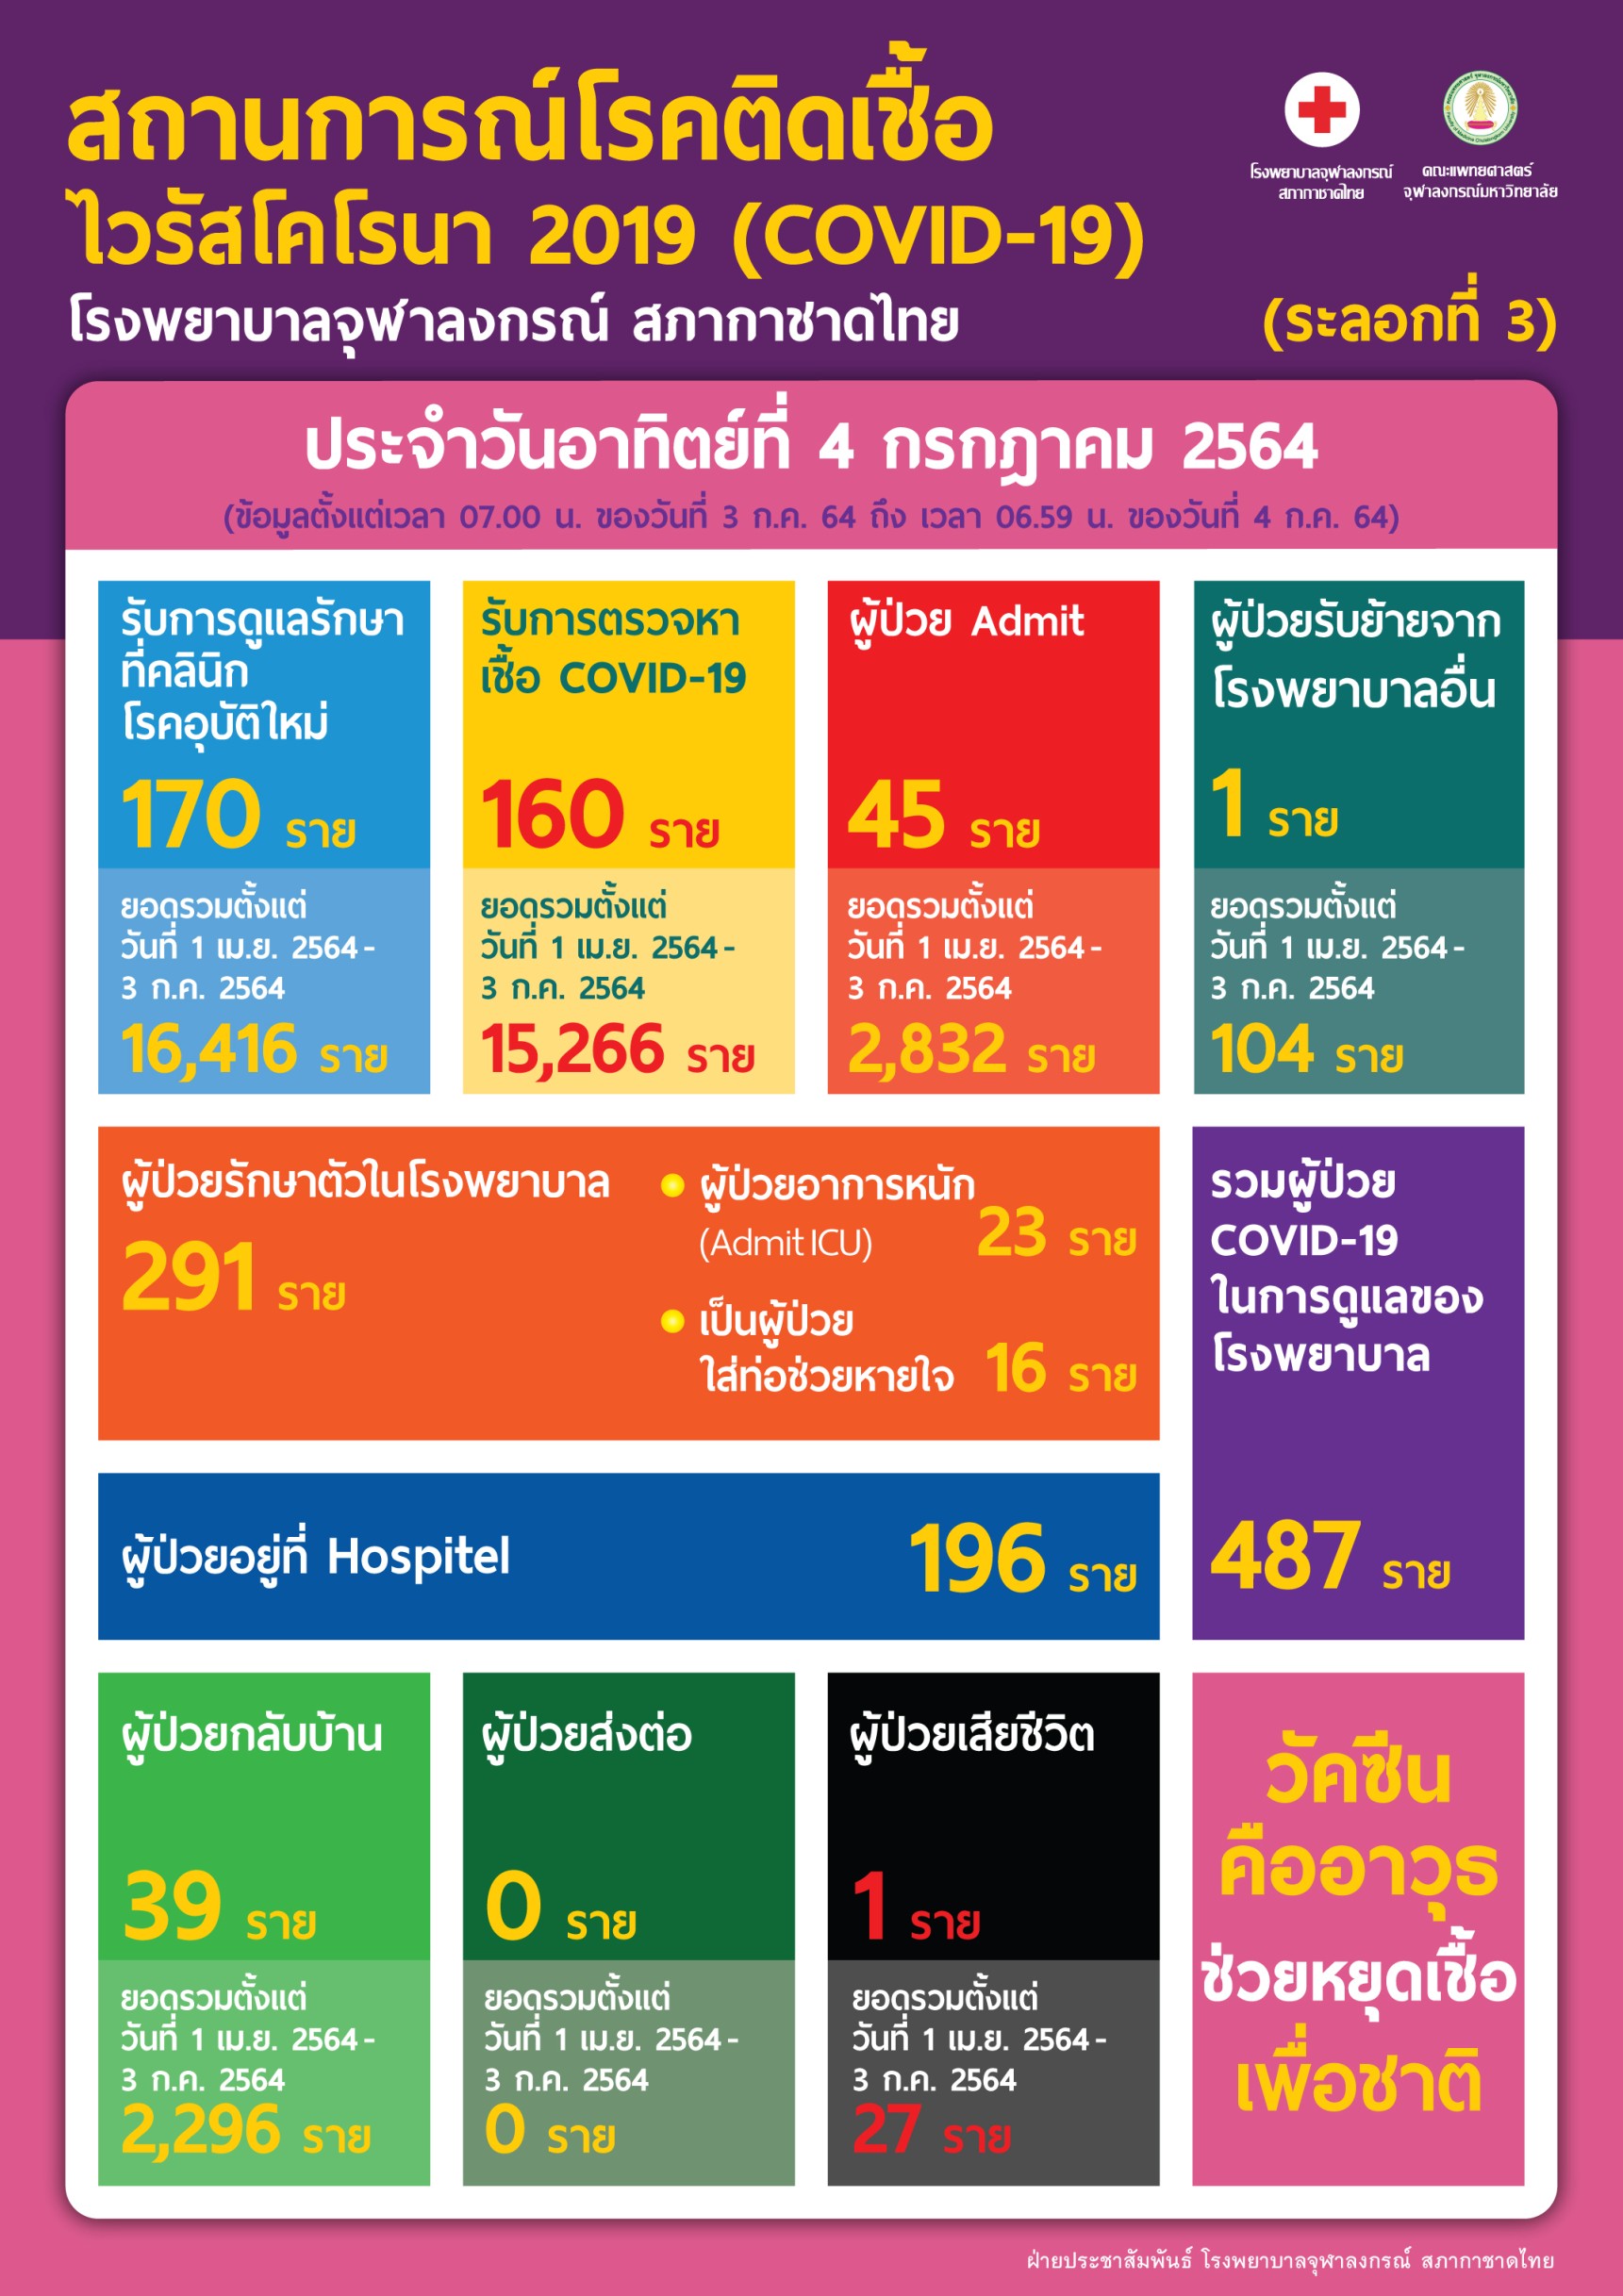 สถานการณ์โรคติดเชื้อไวรัสโคโรนา 2019 (COVID-19)(ระลอกที่ 3) โรงพยาบาลจุฬาลงกรณ์ สภากาชาดไทย ประจำวันอาทิตย์ที่ 4 กรกฎาคม 2564